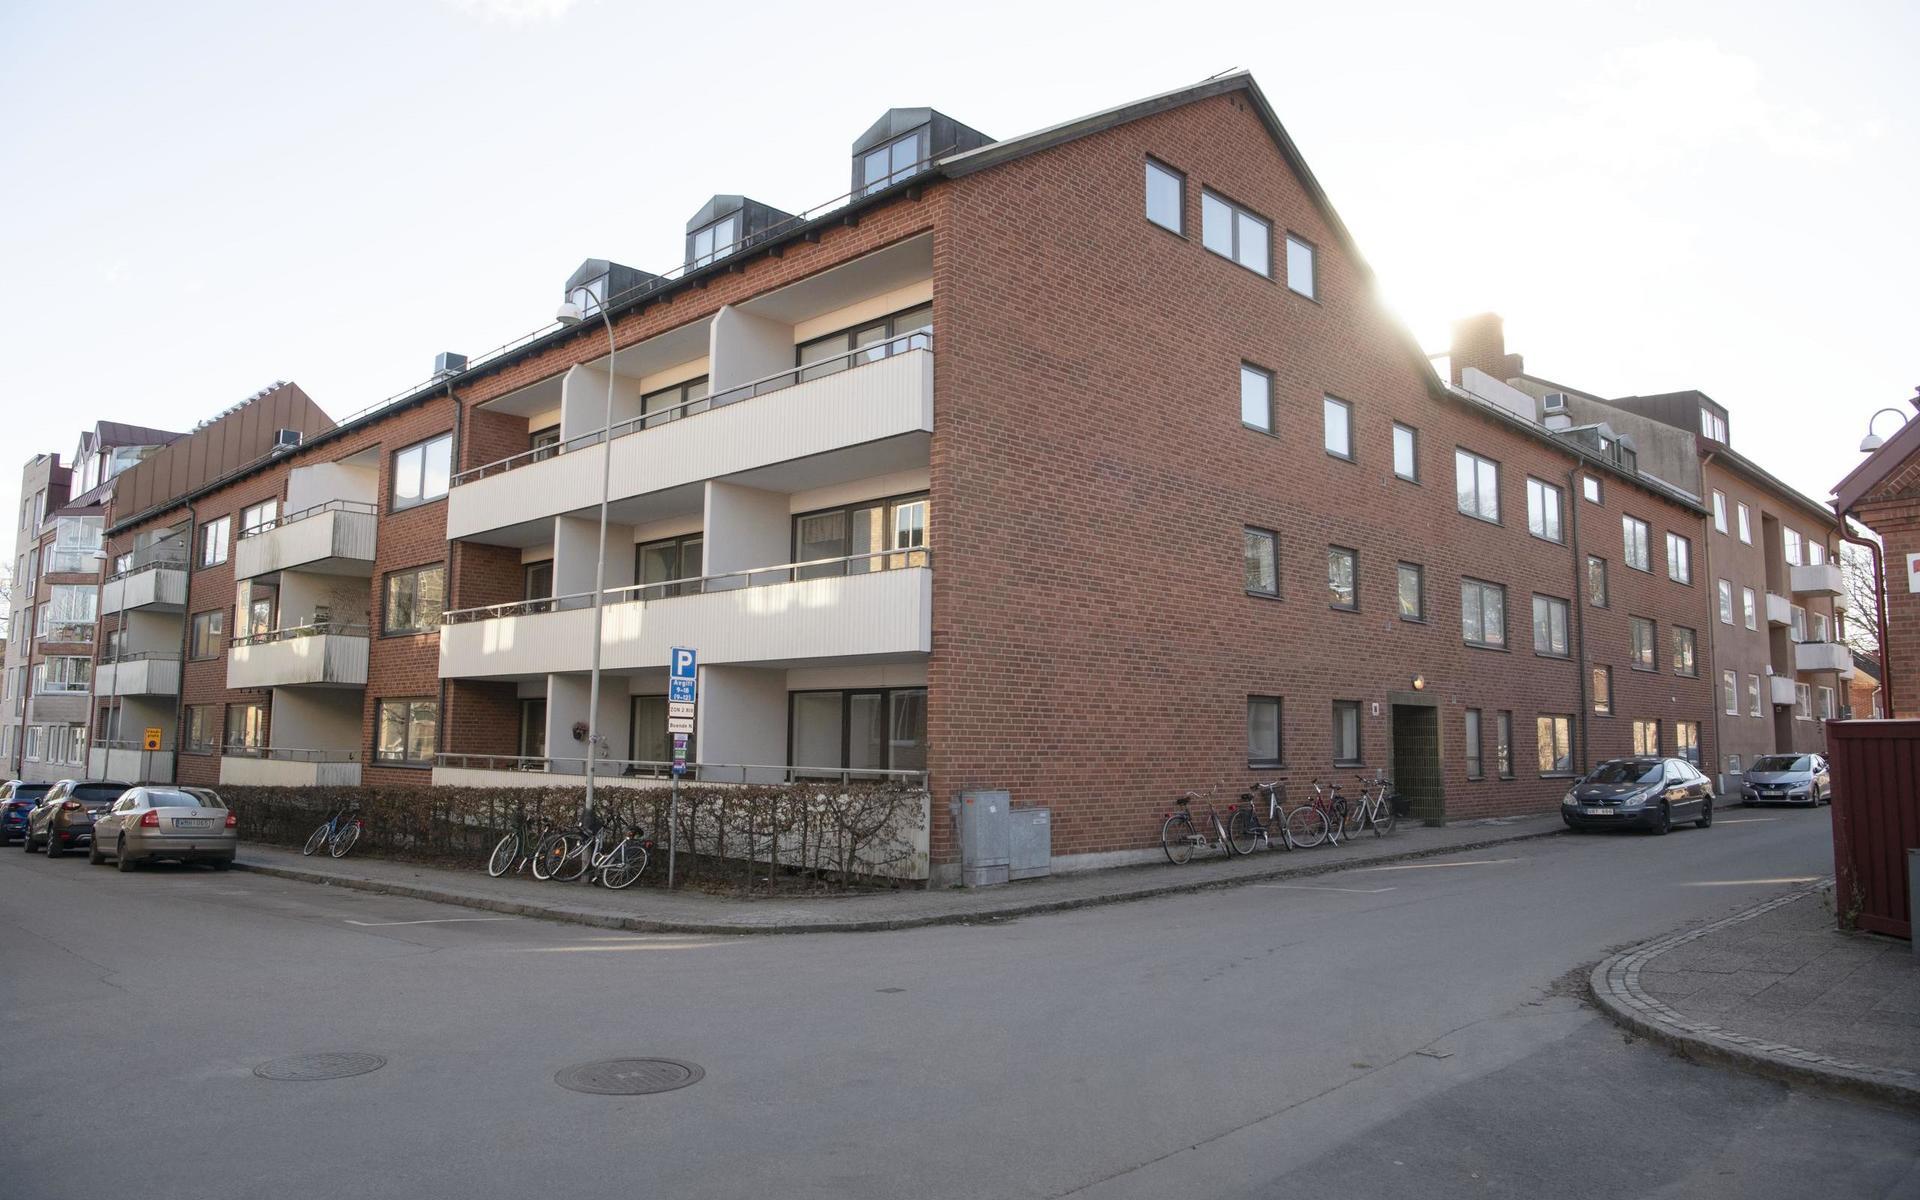 Det här hörnhuset med 30 lägenheter, som är byggt 1973 och har ingång från såväl Bergsgatan som Skolgatan, ska HFAB sälja. Samtidigt vill de boende göra om dem till bostadsrätter.